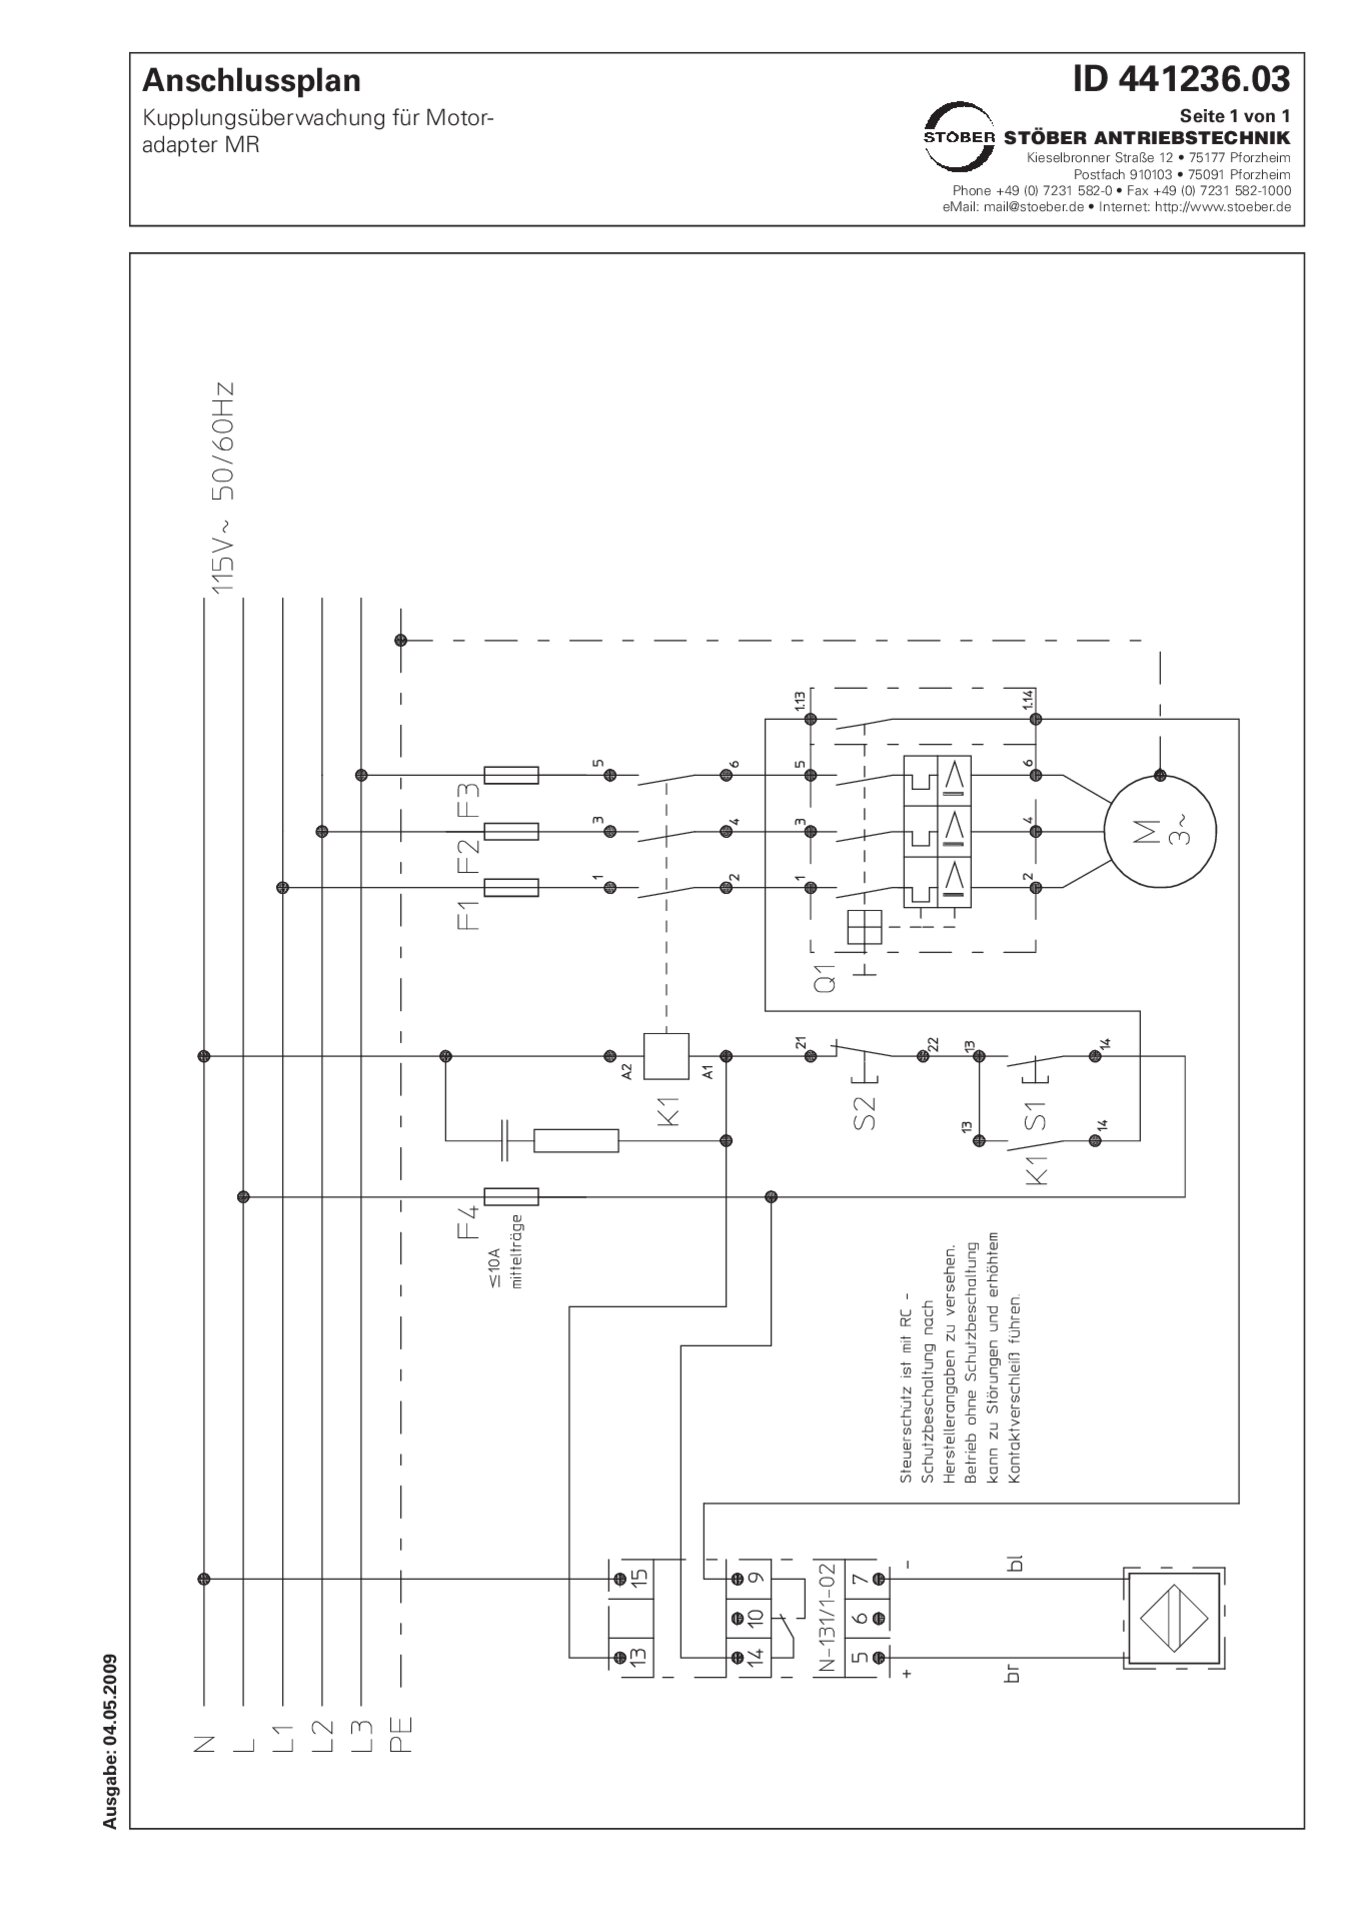 Schema di allacciamento Controllo accoppiamento per adattatore motore MR 115 V